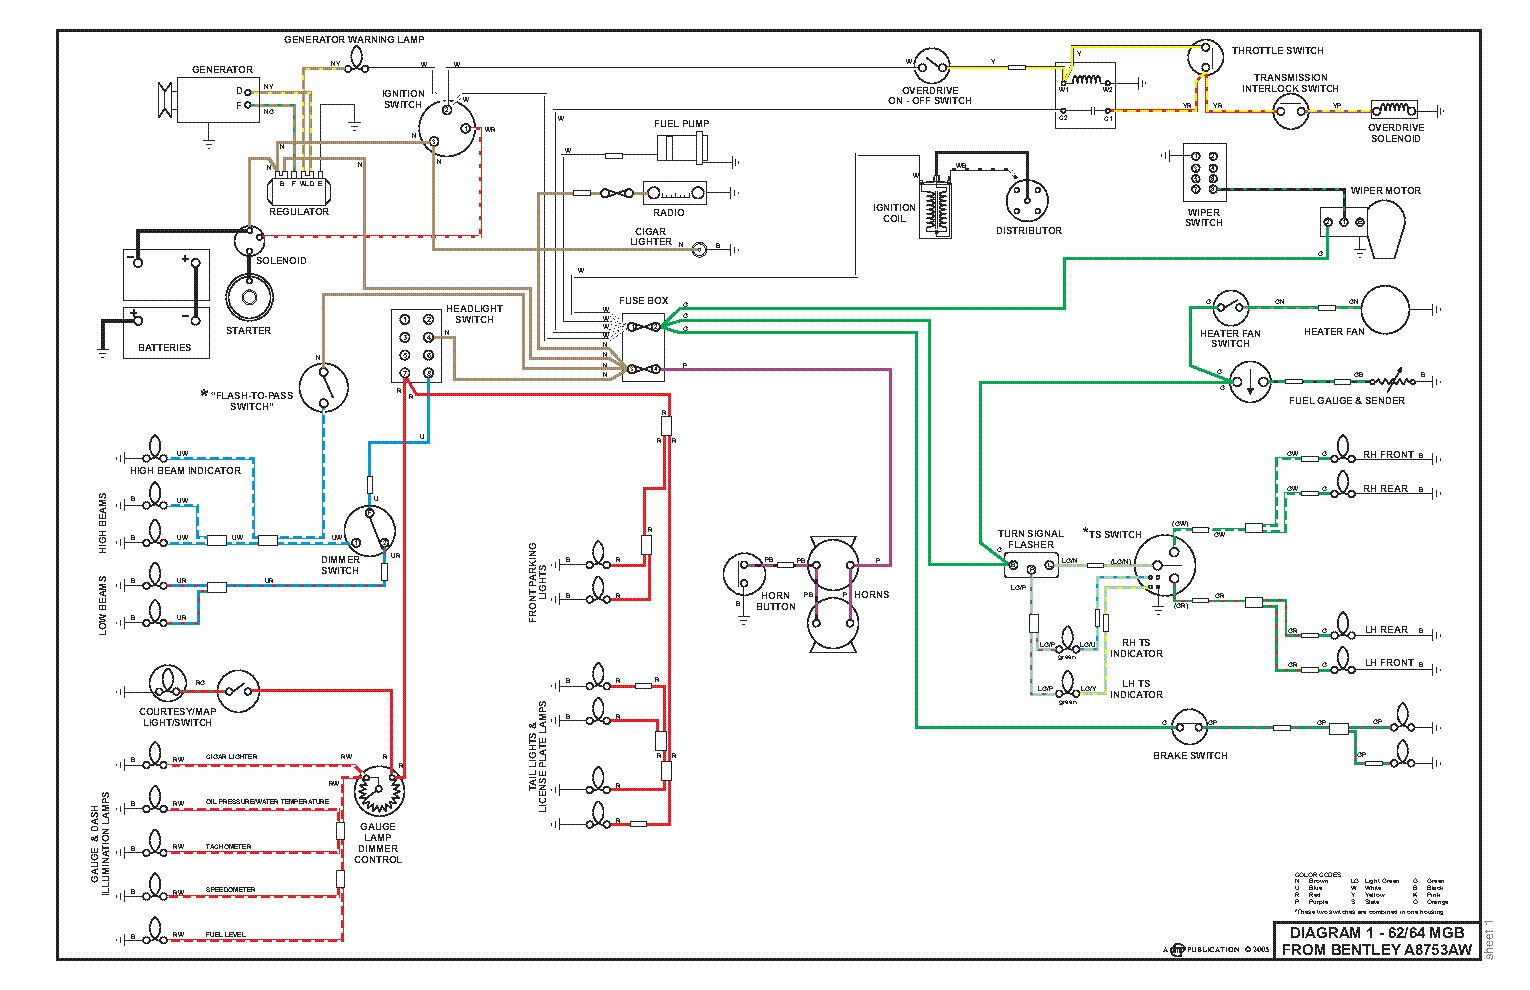 electrical wiring diagram pdf wiring diagram datasource automotive wiring diagram pdf auto wiring diagram pdf